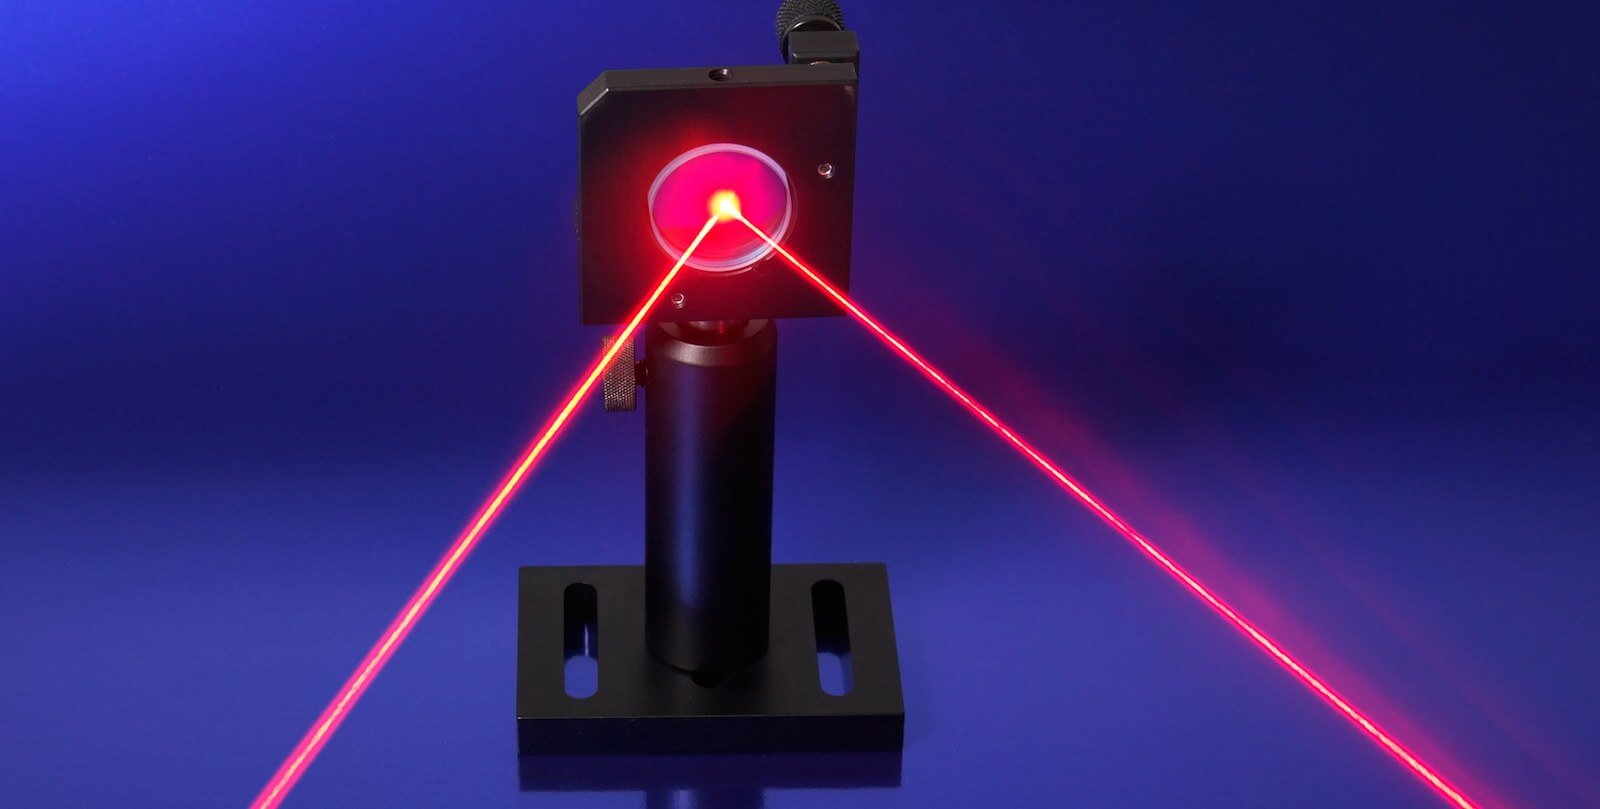 Das Pentagon entwickelt «sprechenden» Laser. Was ist das und warum?